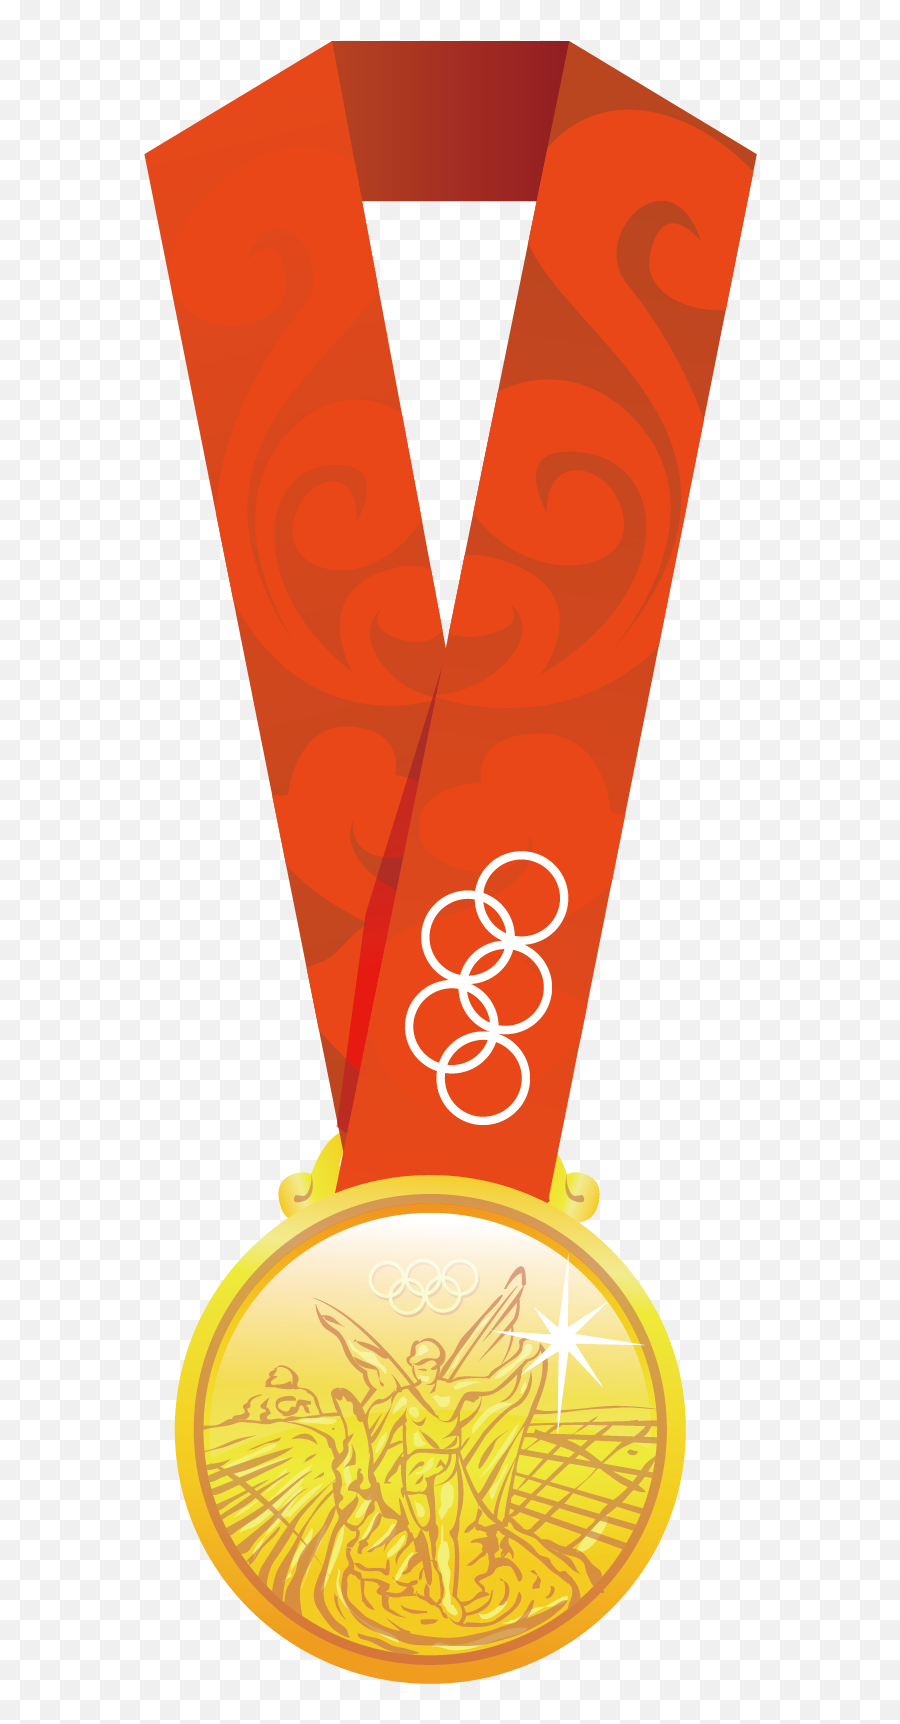 Olympic Gold Medal Png Image - Purepng Free Transparent Gold Medal Emoji,Medal Clipart